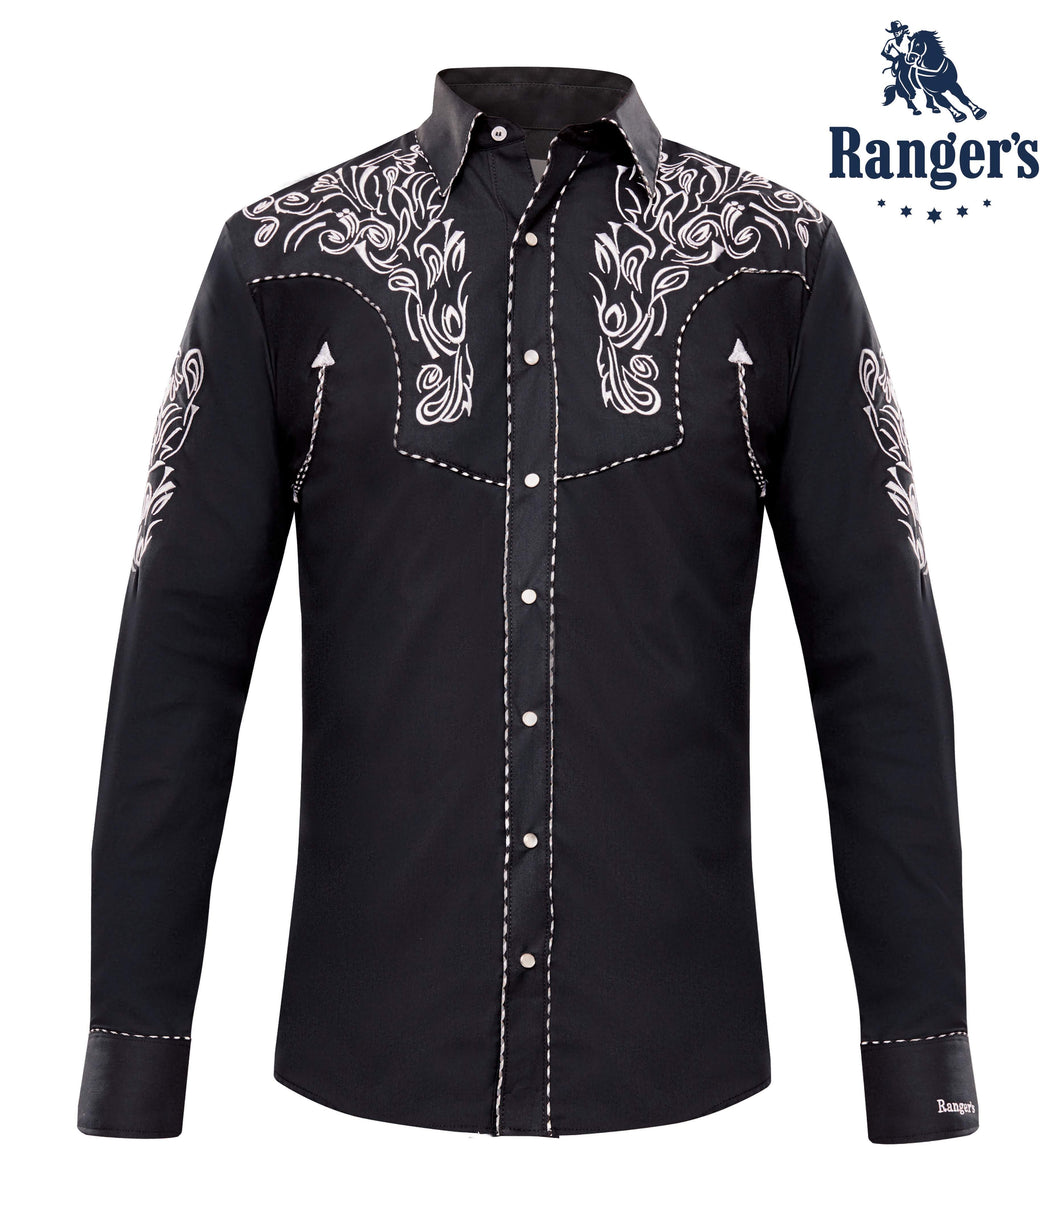 Ranger's Western Shirt